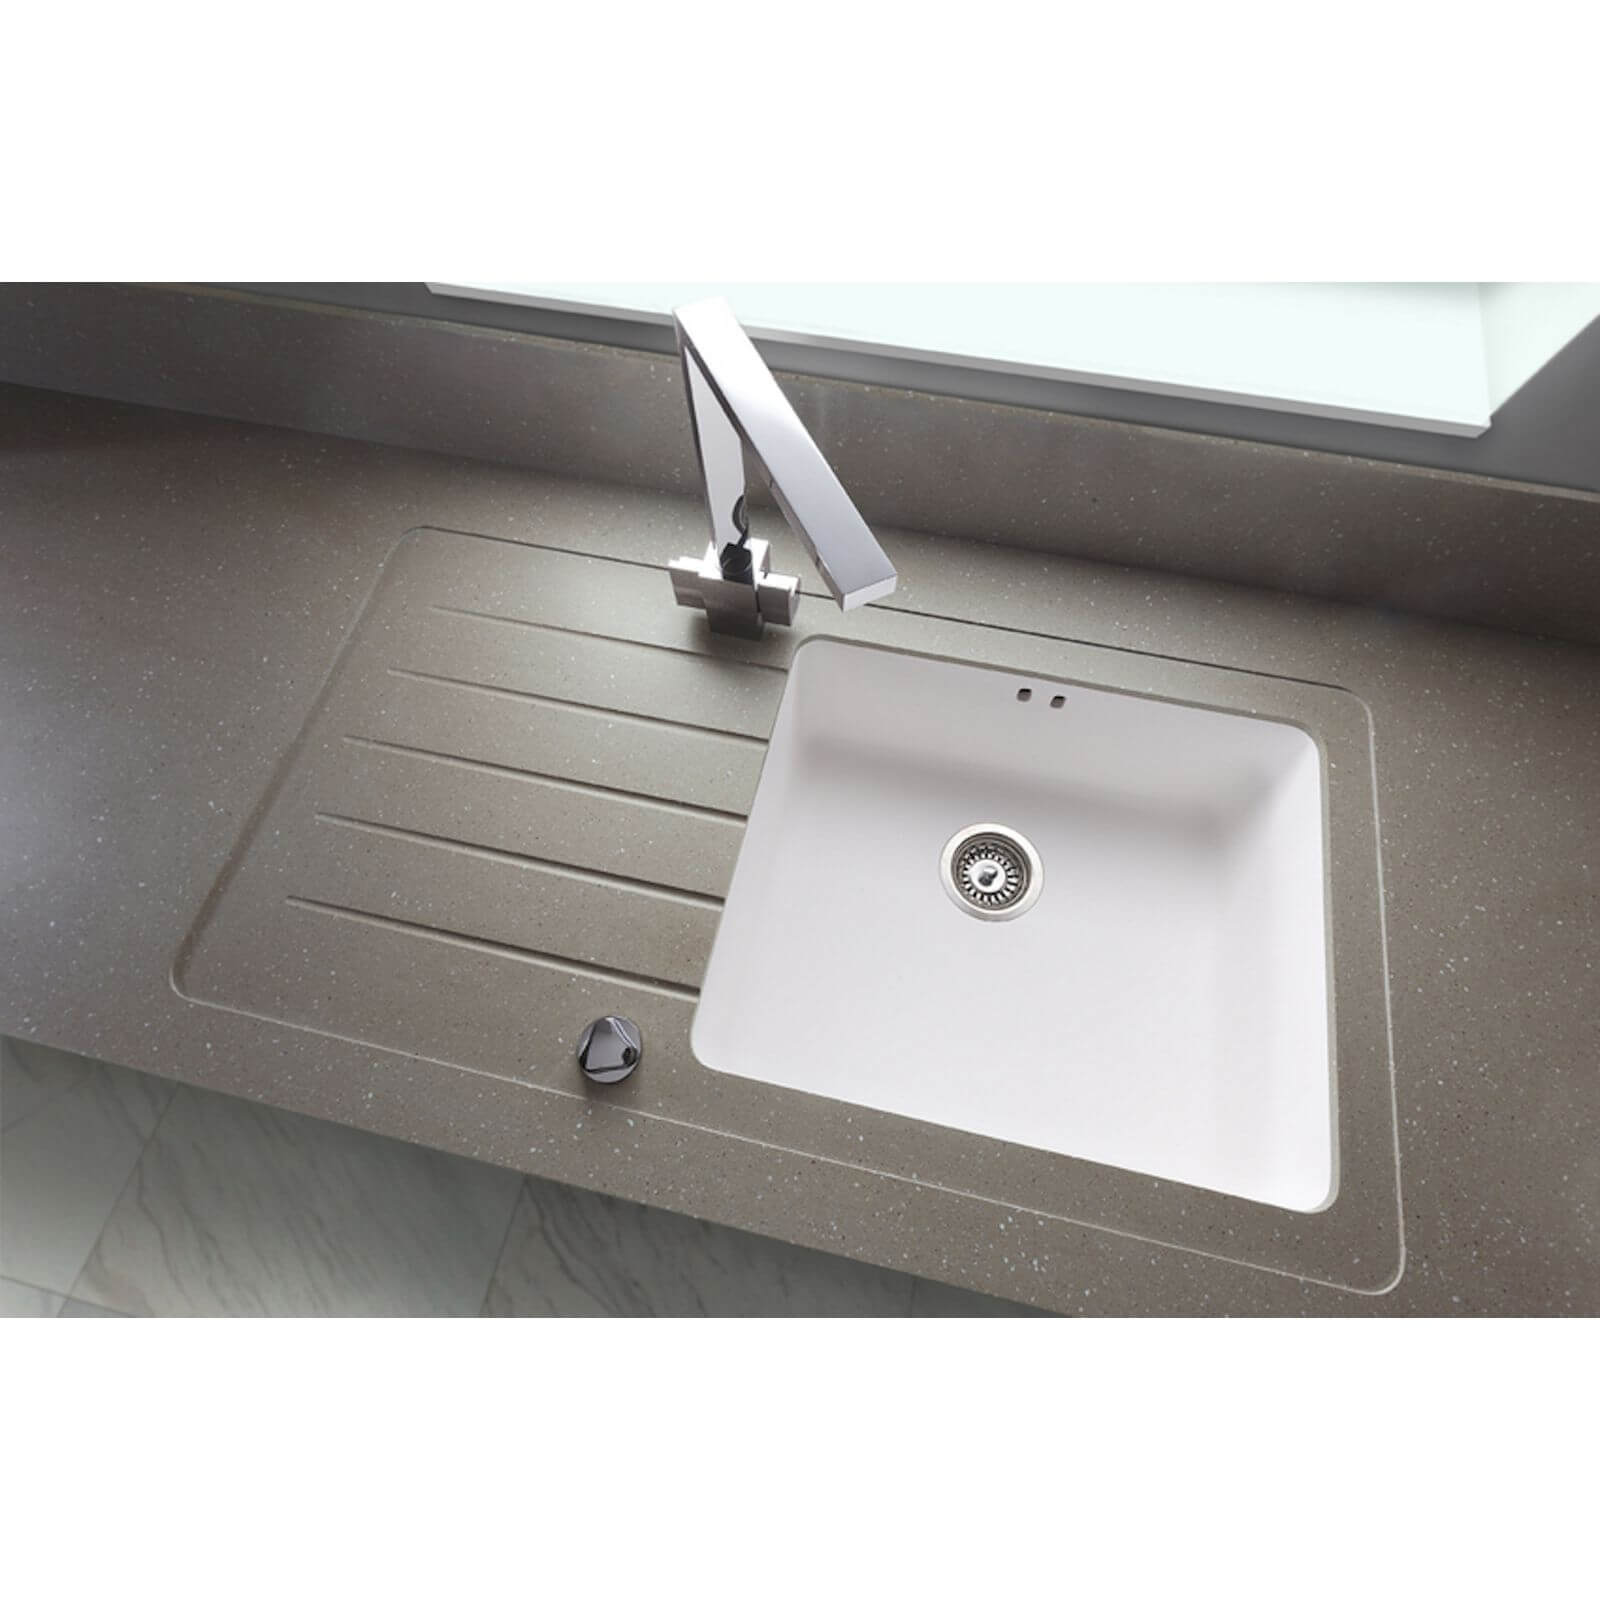 Maia Brazilian Greige Kitchen Sink Worktop - 1.5 Designer Right Hand Bowl - 3600 x 650 x 28mm